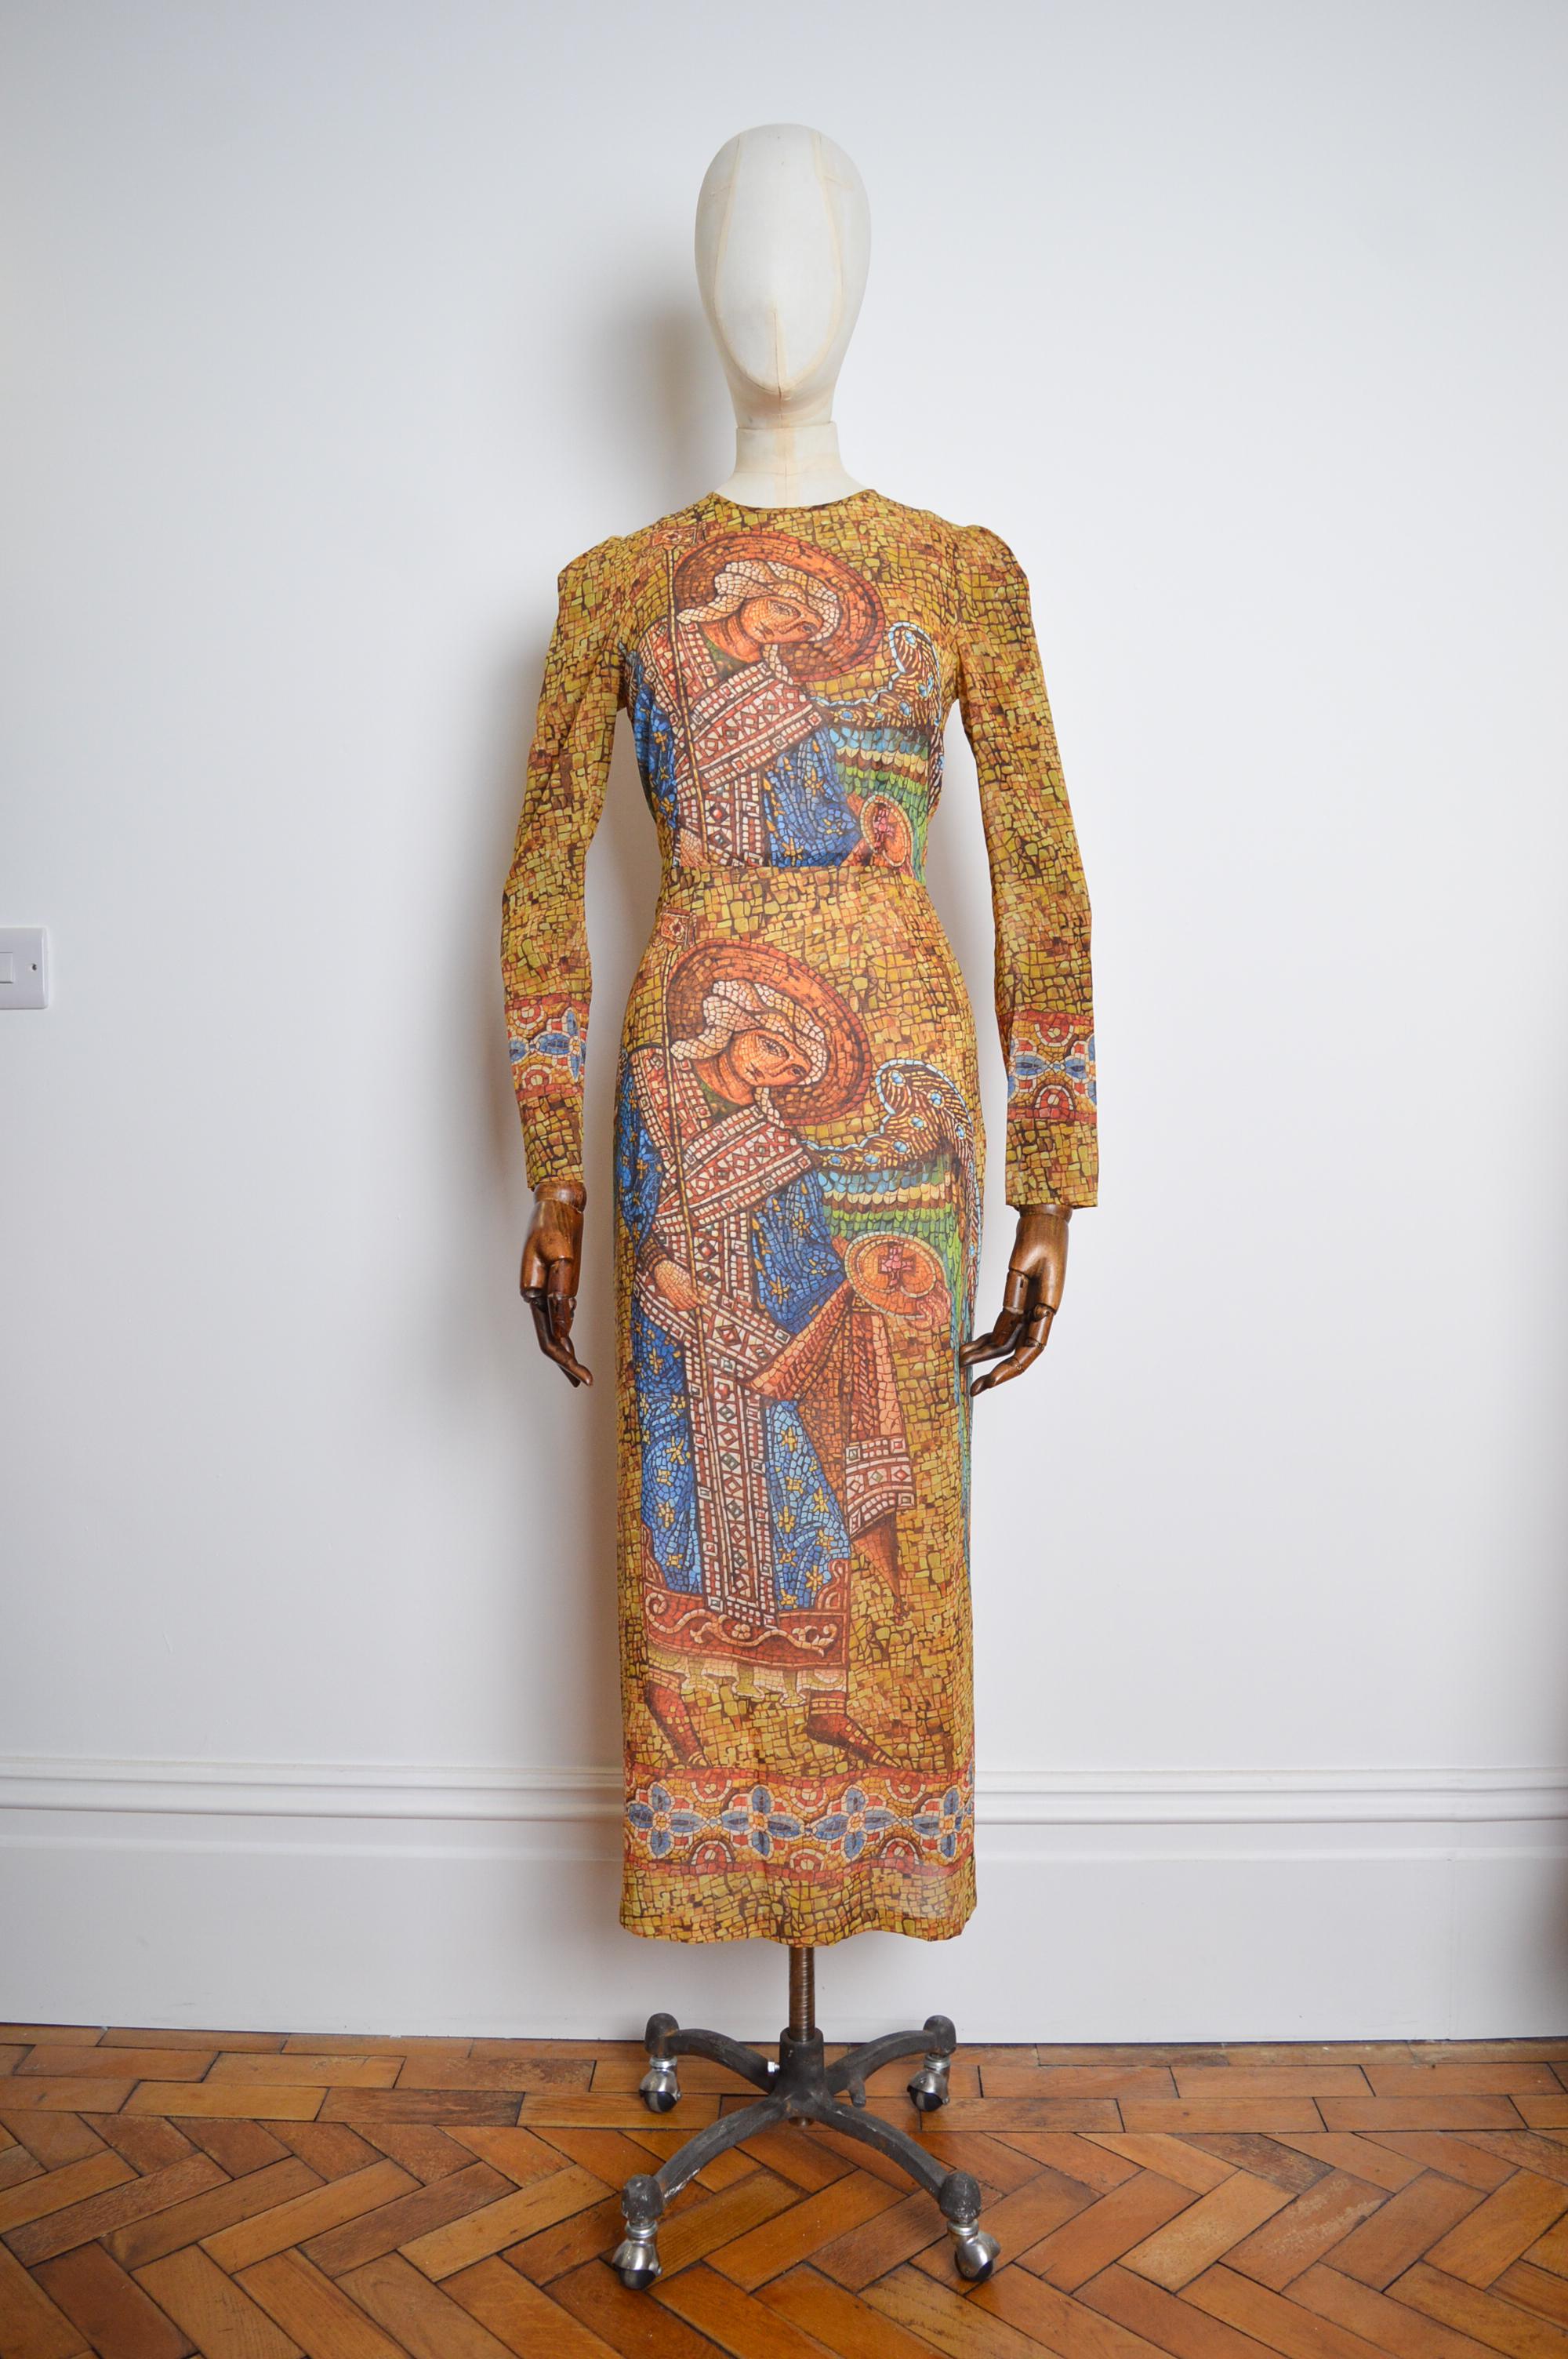 Une robe en mousseline à manches longues à motif mosaïque, décadente, issue de la Collection défilé F/W 2013 de DOLCE & GABBANA.

FABRIQUÉ EN ITALIE.

La robe se compose d'un petit manteau de robe de chambre Nude avec une couche secondaire de